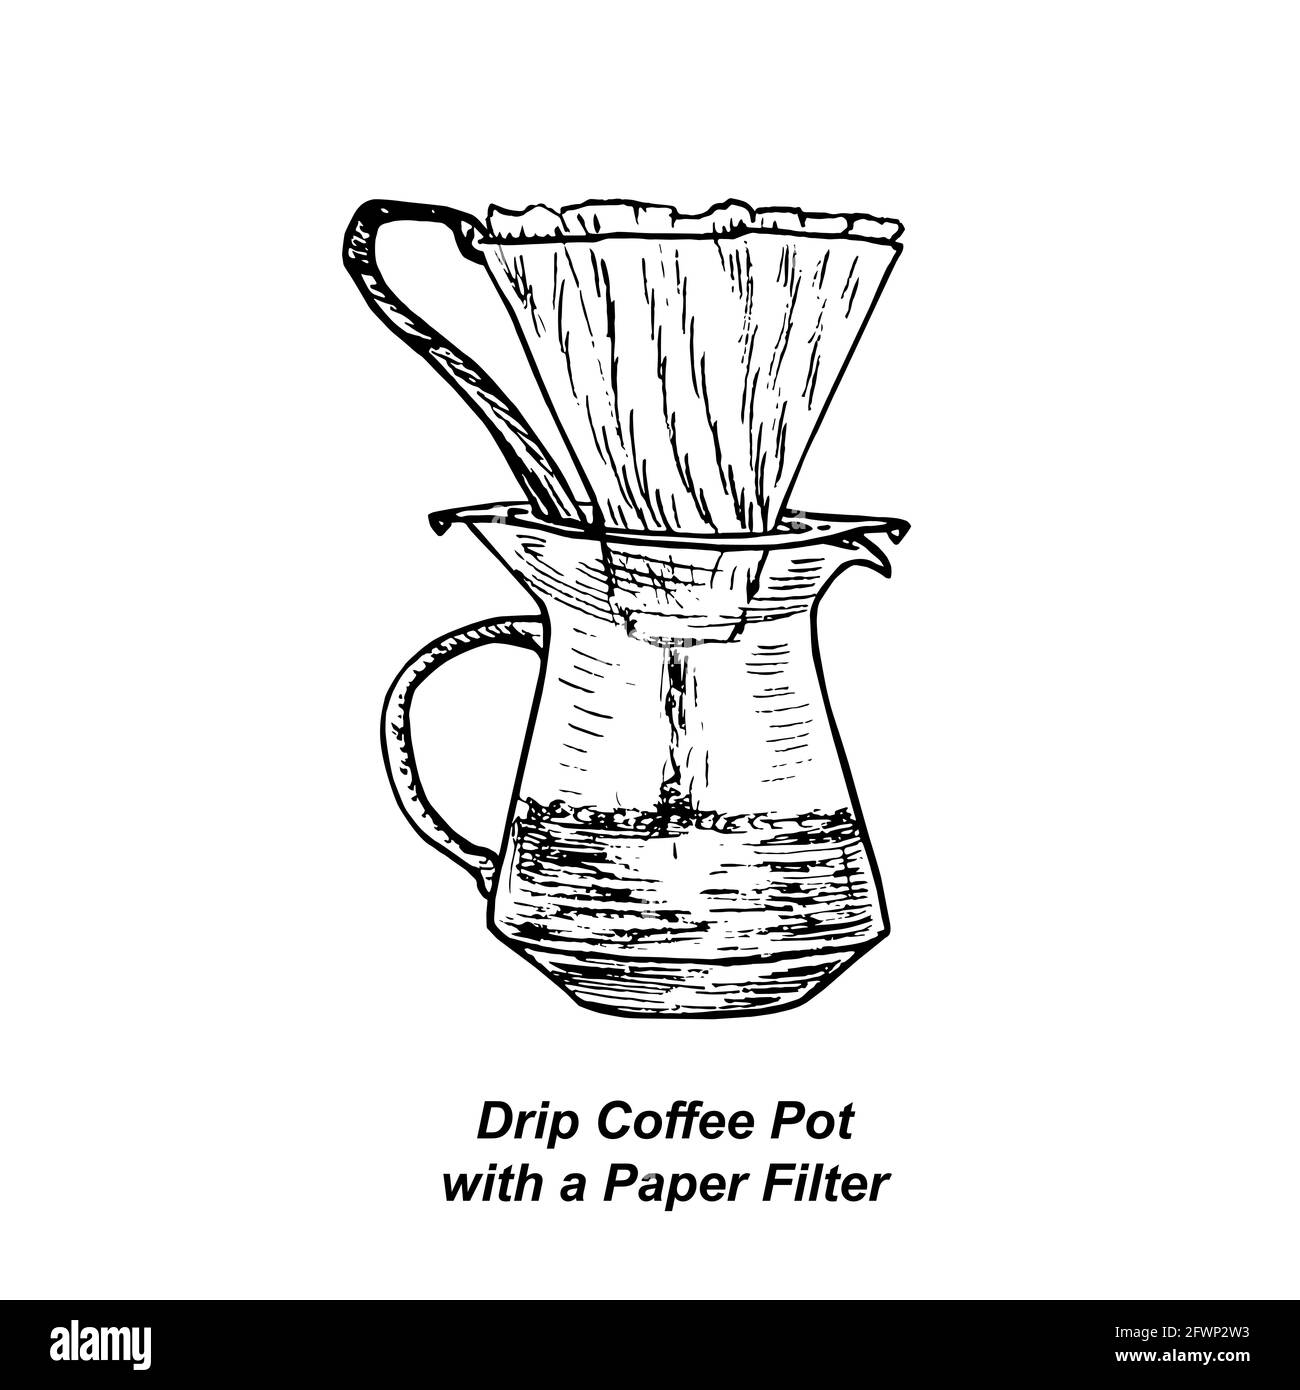 Filtro de café: Más de 29,457 ilustraciones y dibujos de stock con licencia  libres de regalías